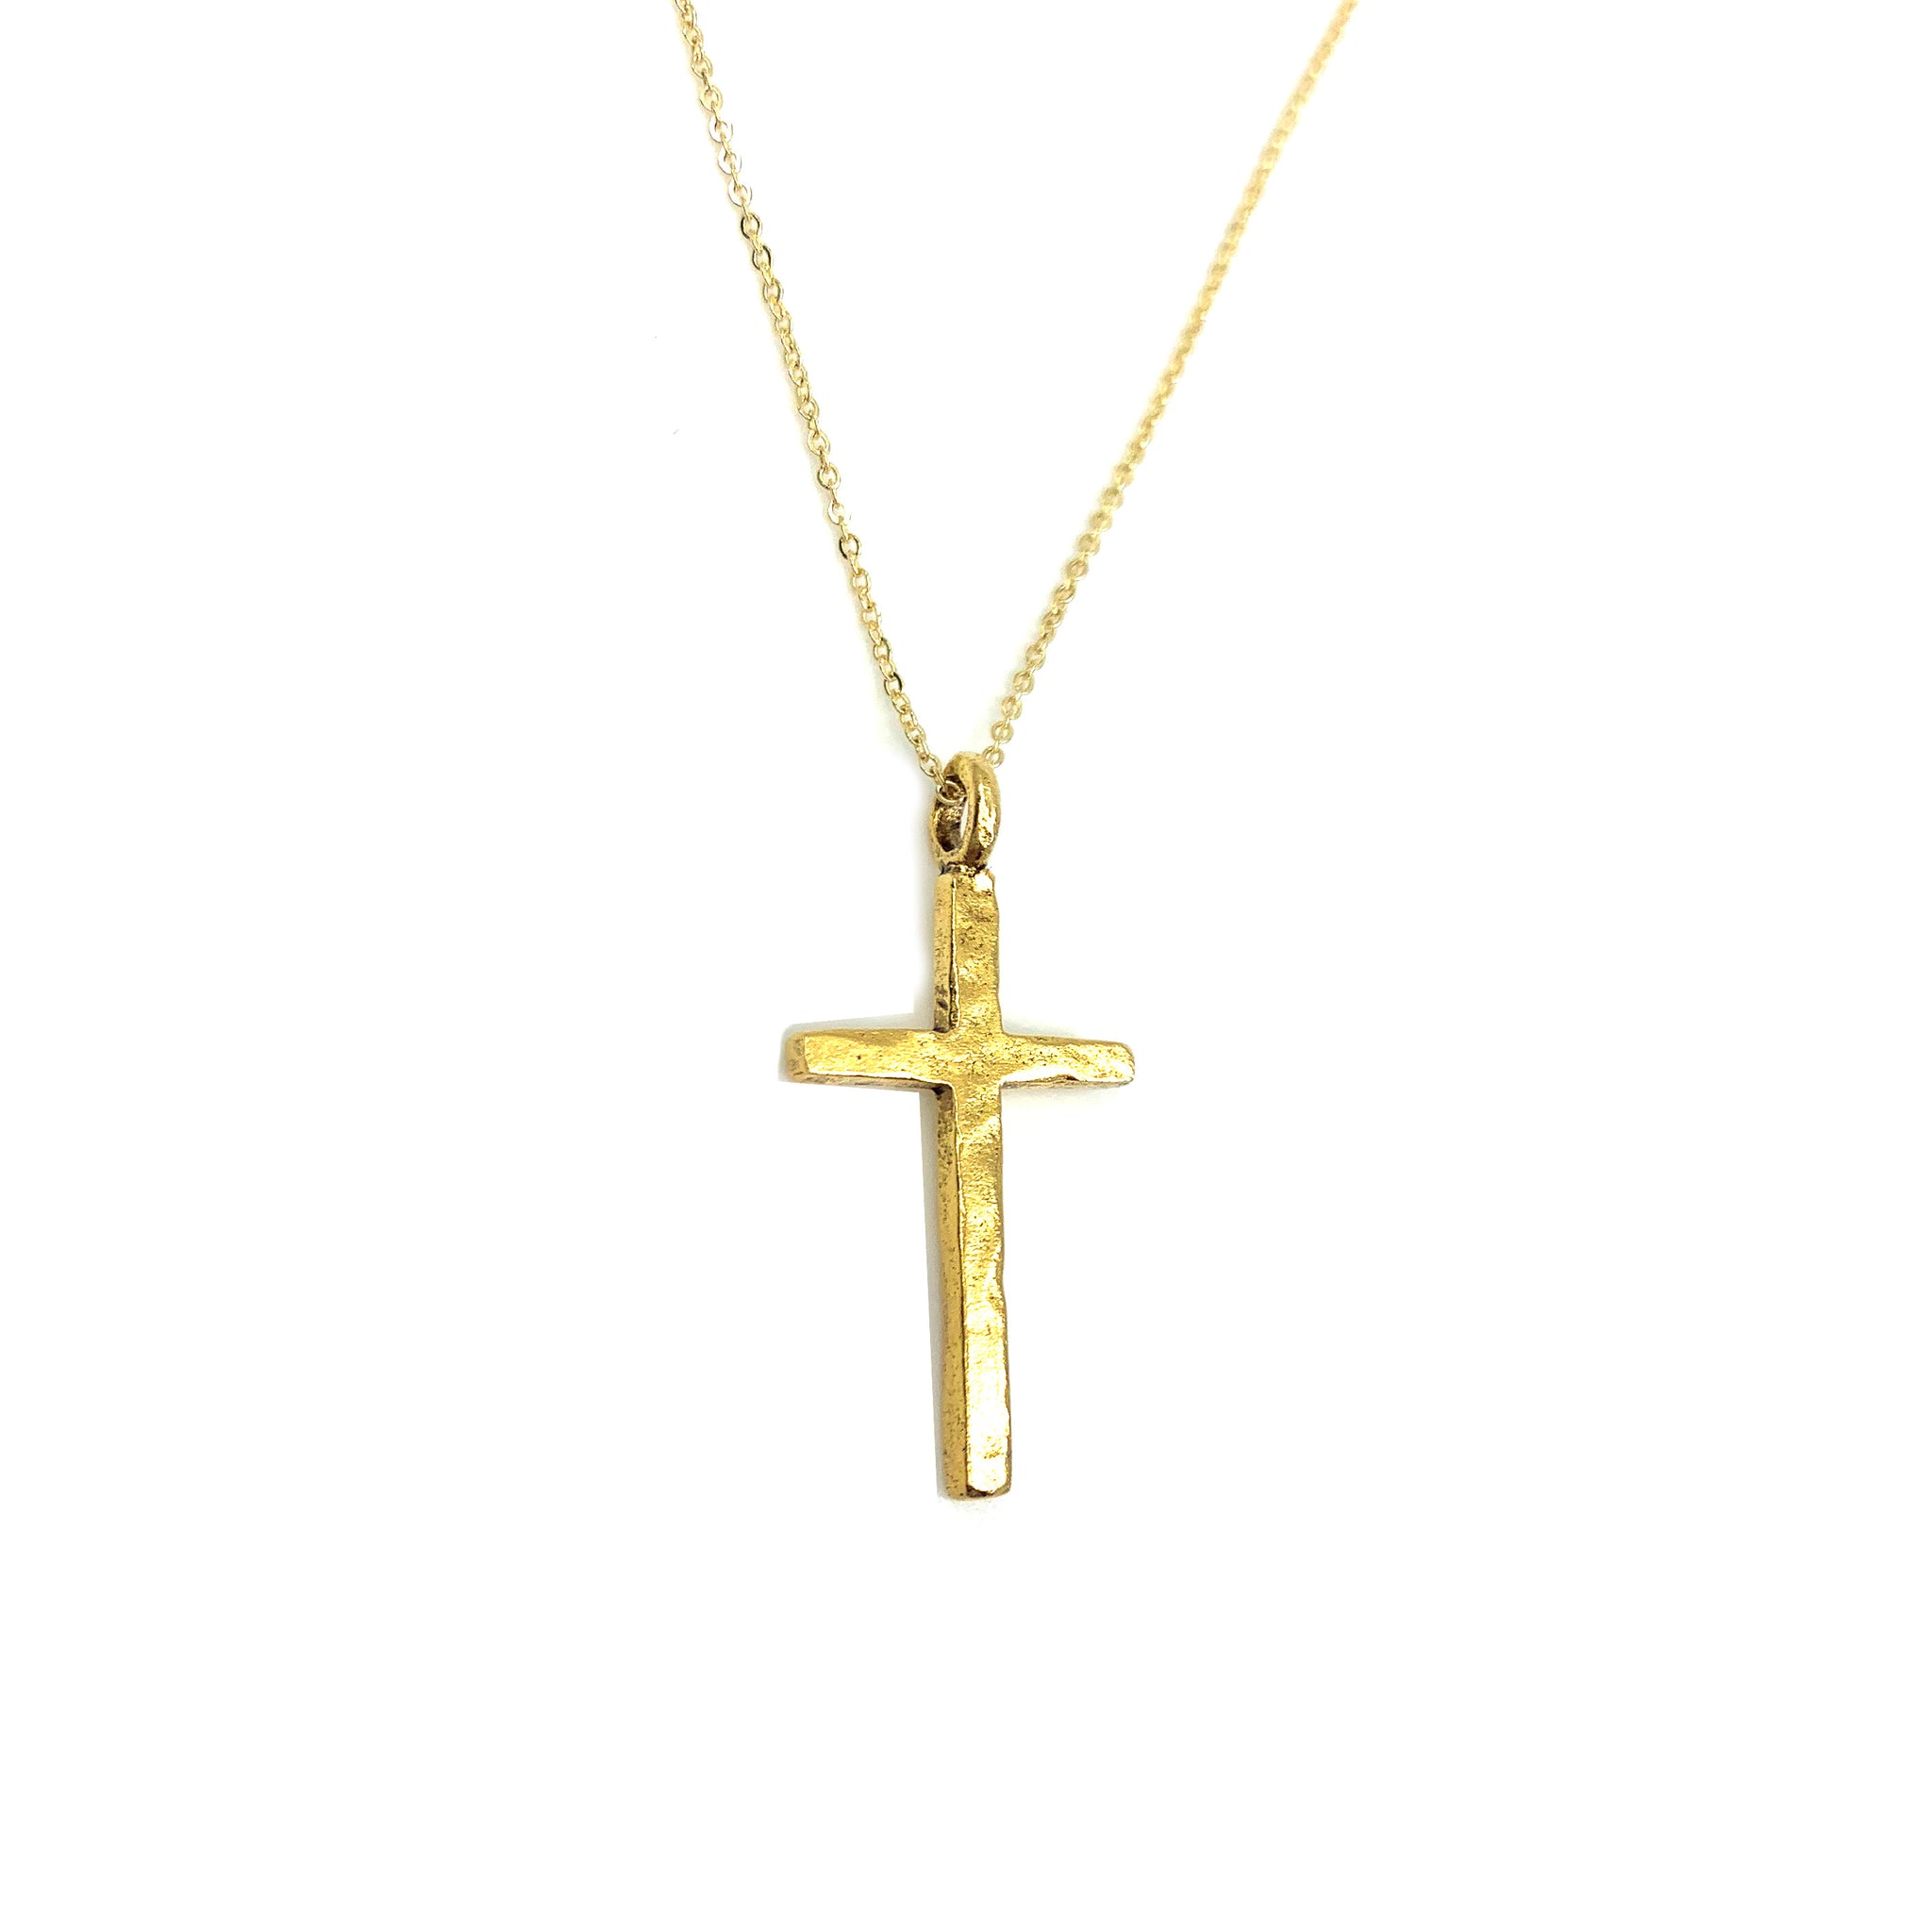 The Keep the Faith Gold Cross Necklace